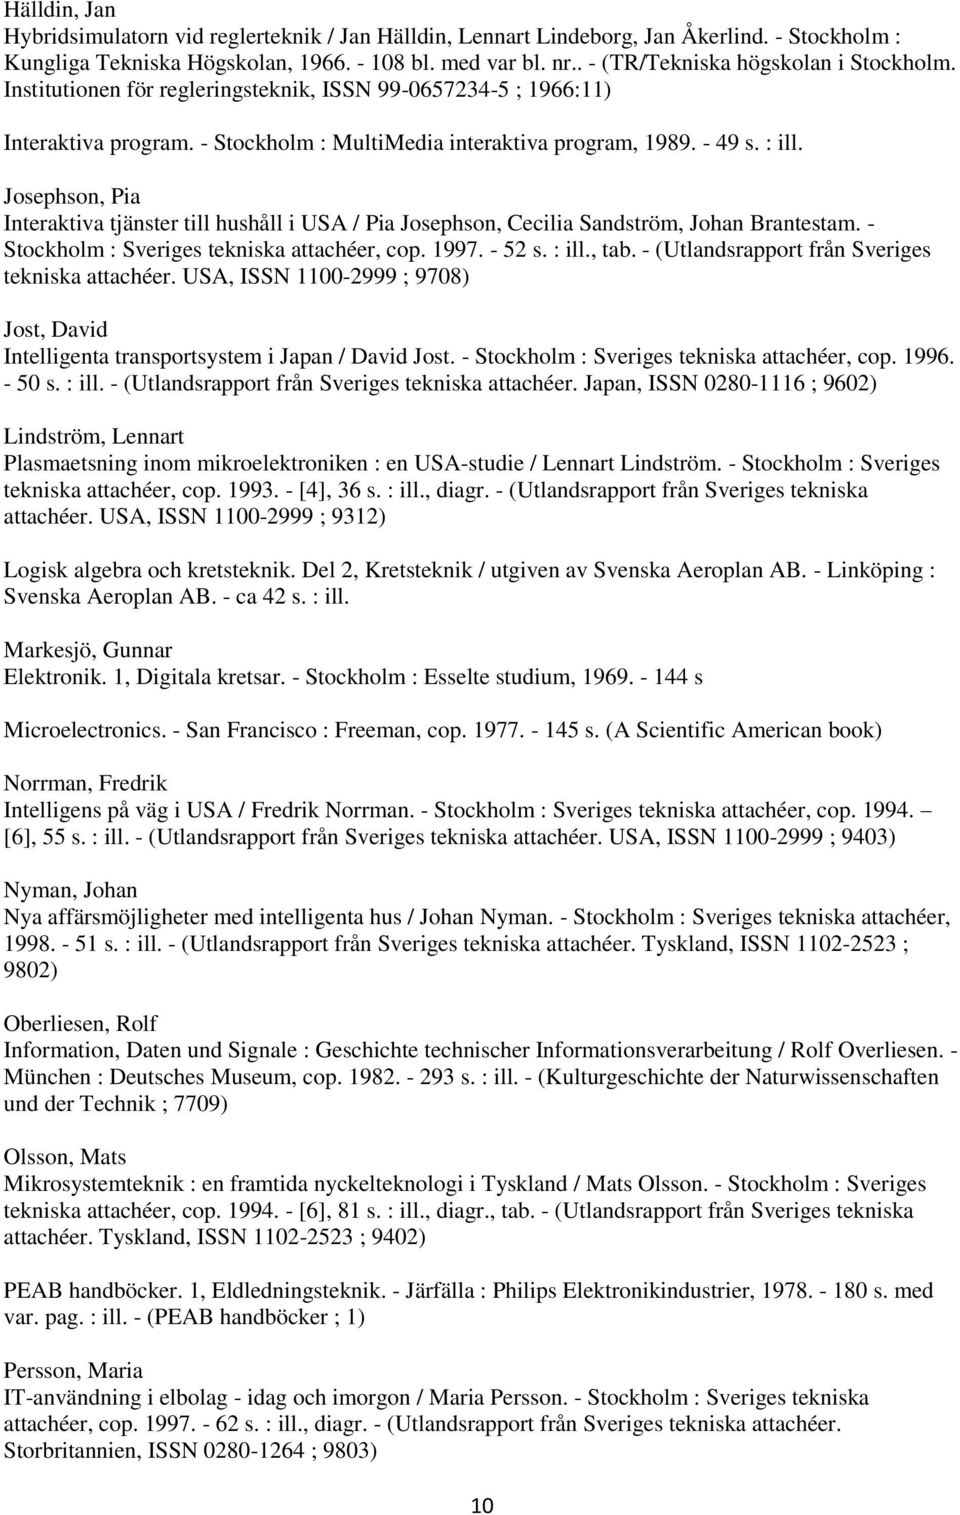 Josephson, Pia Interaktiva tjänster till hushåll i USA / Pia Josephson, Cecilia Sandström, Johan Brantestam. - Stockholm : Sveriges tekniska attachéer, cop. 1997. - 52 s. : ill., tab.